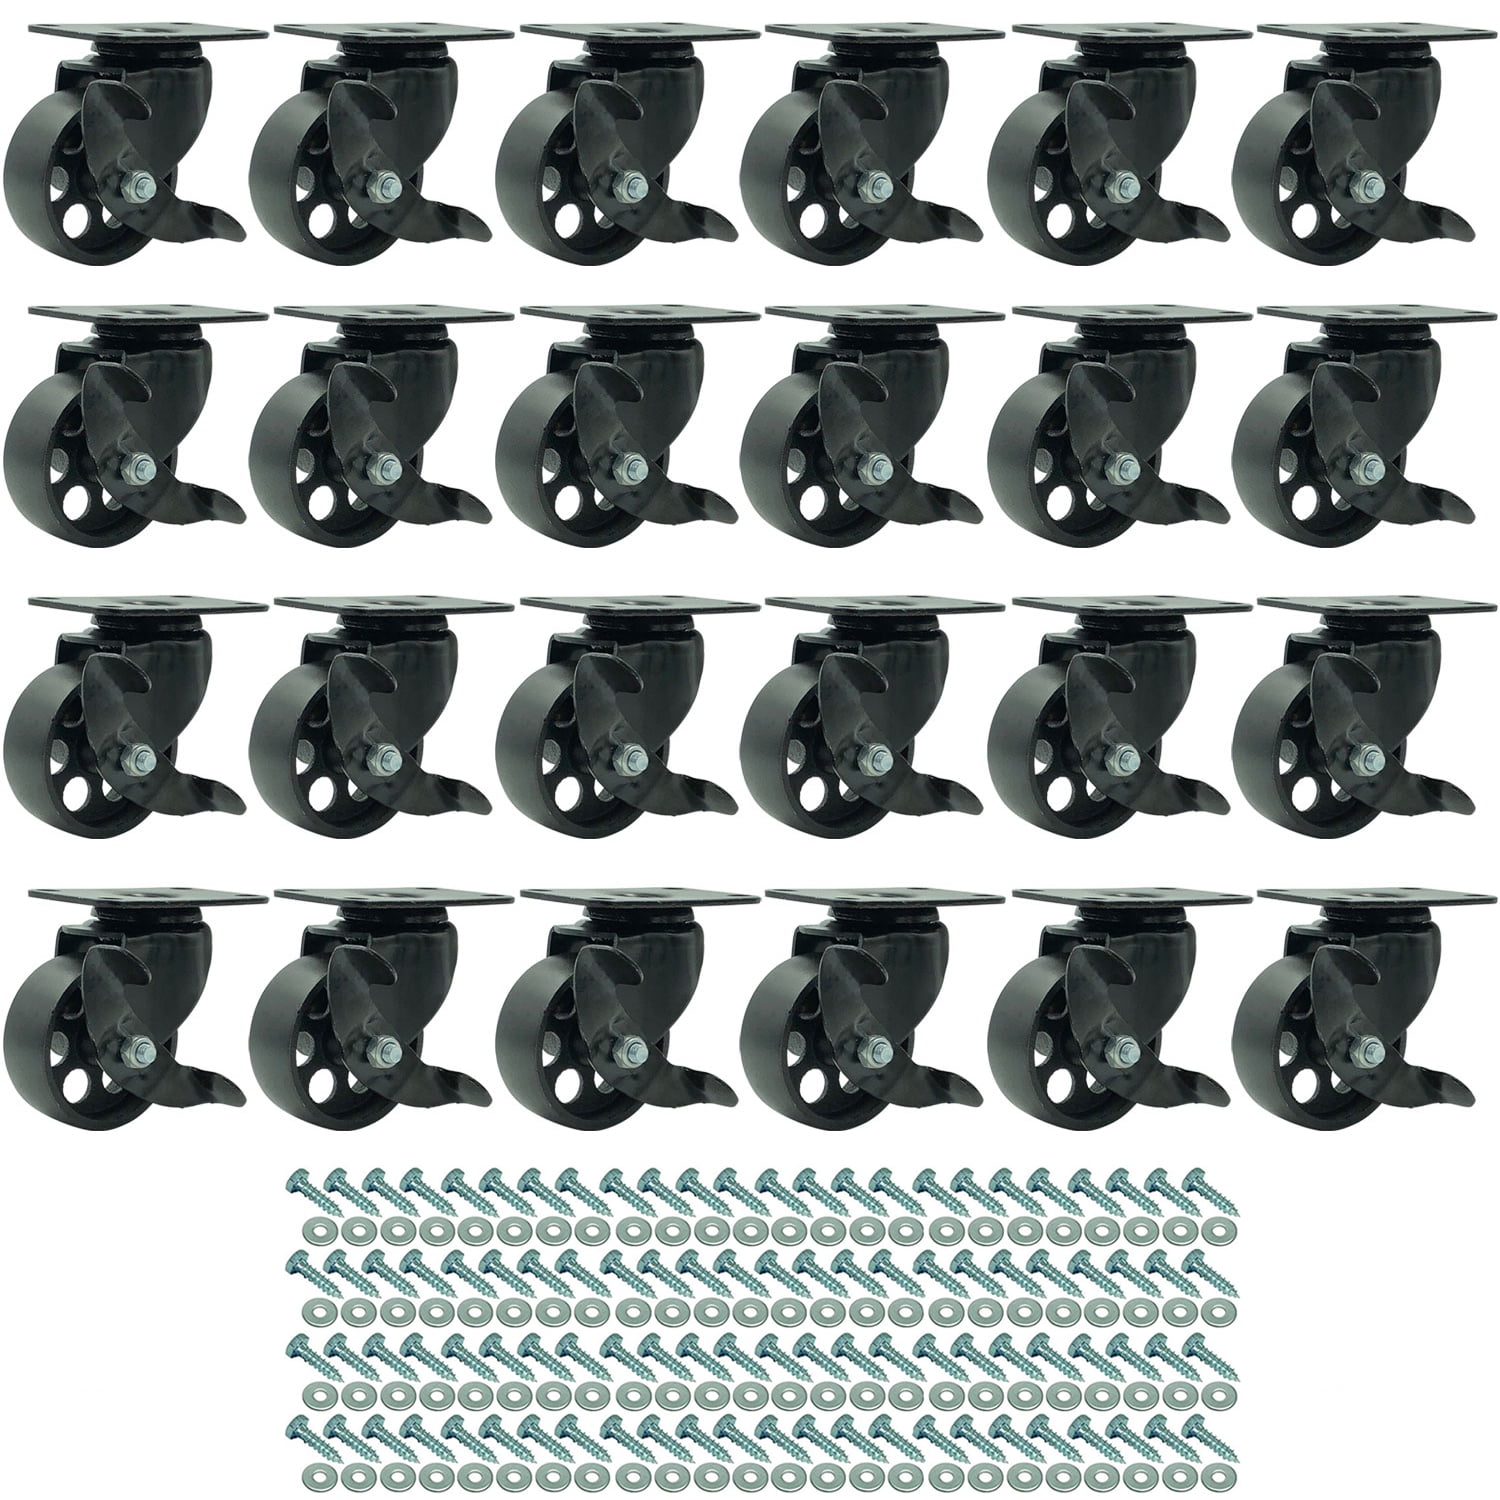 24 All Black Metal Swivel Plate Caster Wheels Heavy Duty 3" No Brake 